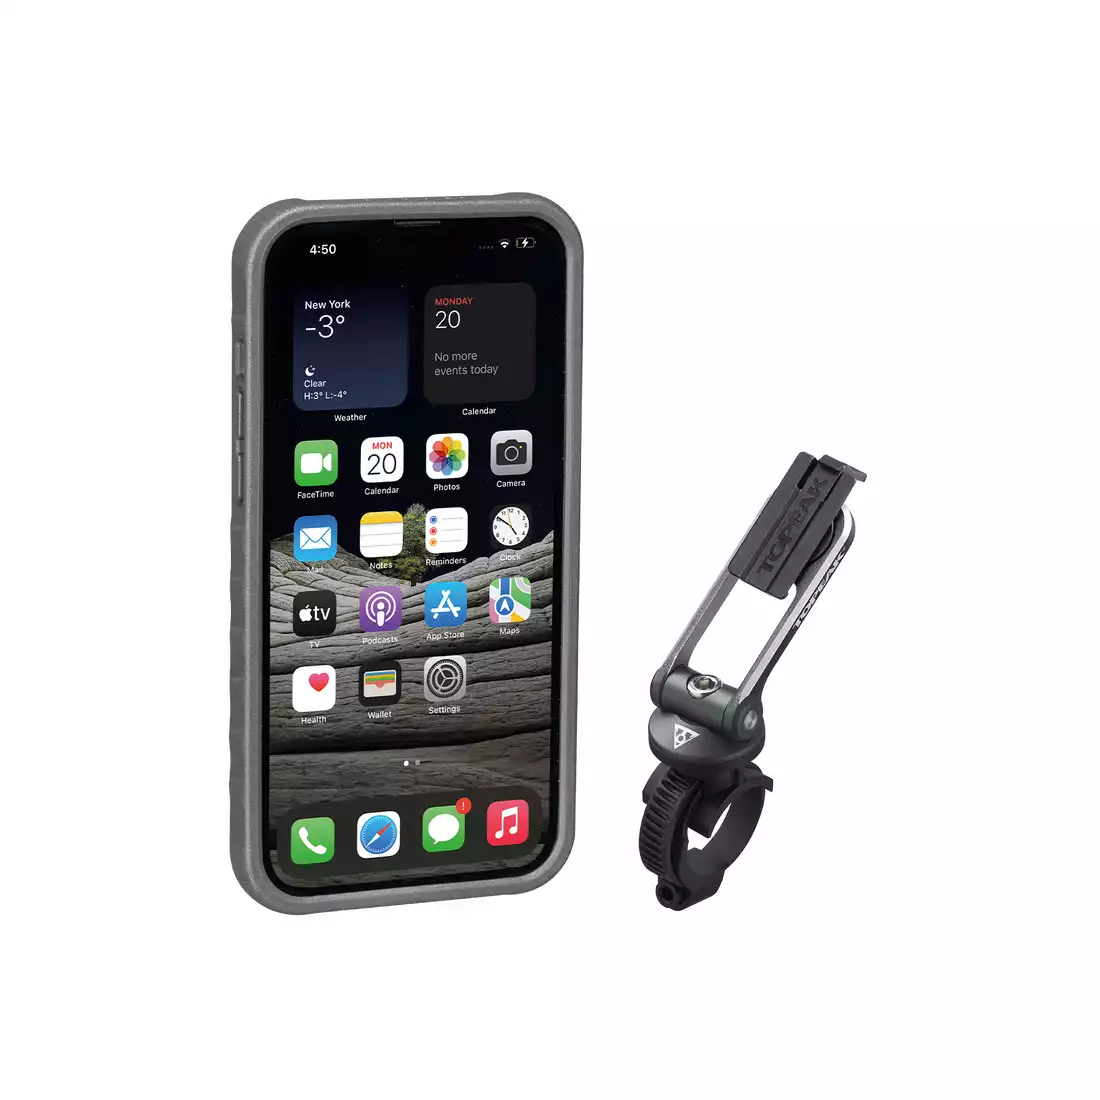 TOPEAK RIDECASE Pouzdro + držák na mobil na kolo Iphone 13 Pro Max, černá / šedá